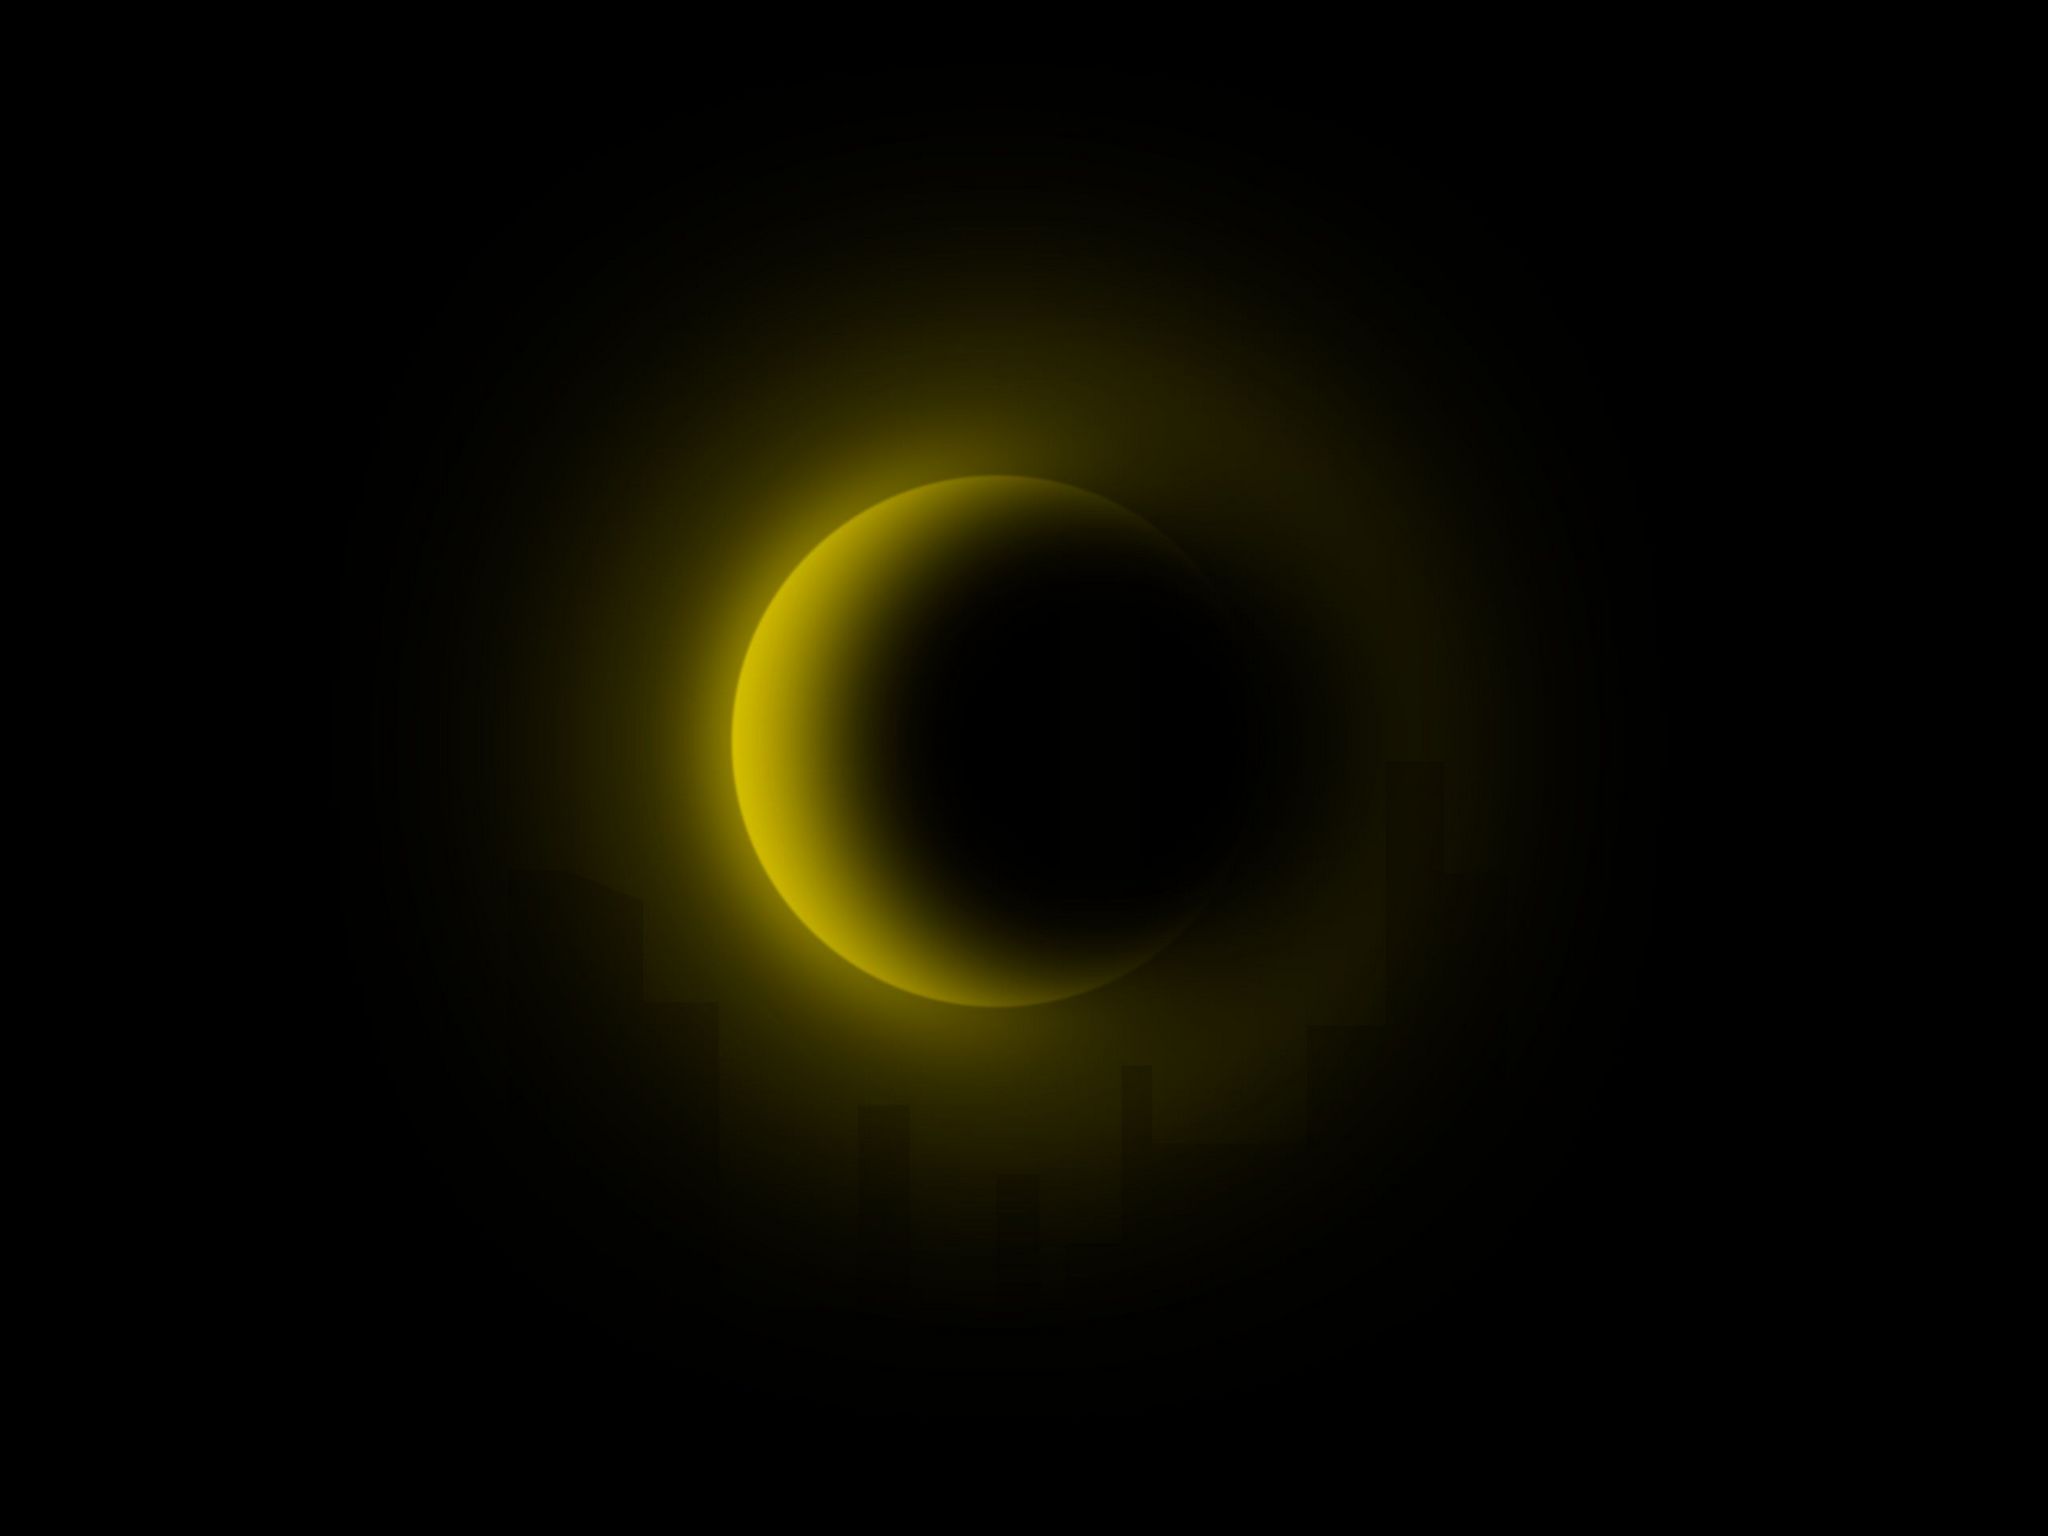 Zatmění Slunce 2048x1536. Tapeta, pozadí na plochu PC. Obrázek ke stažení zdarma